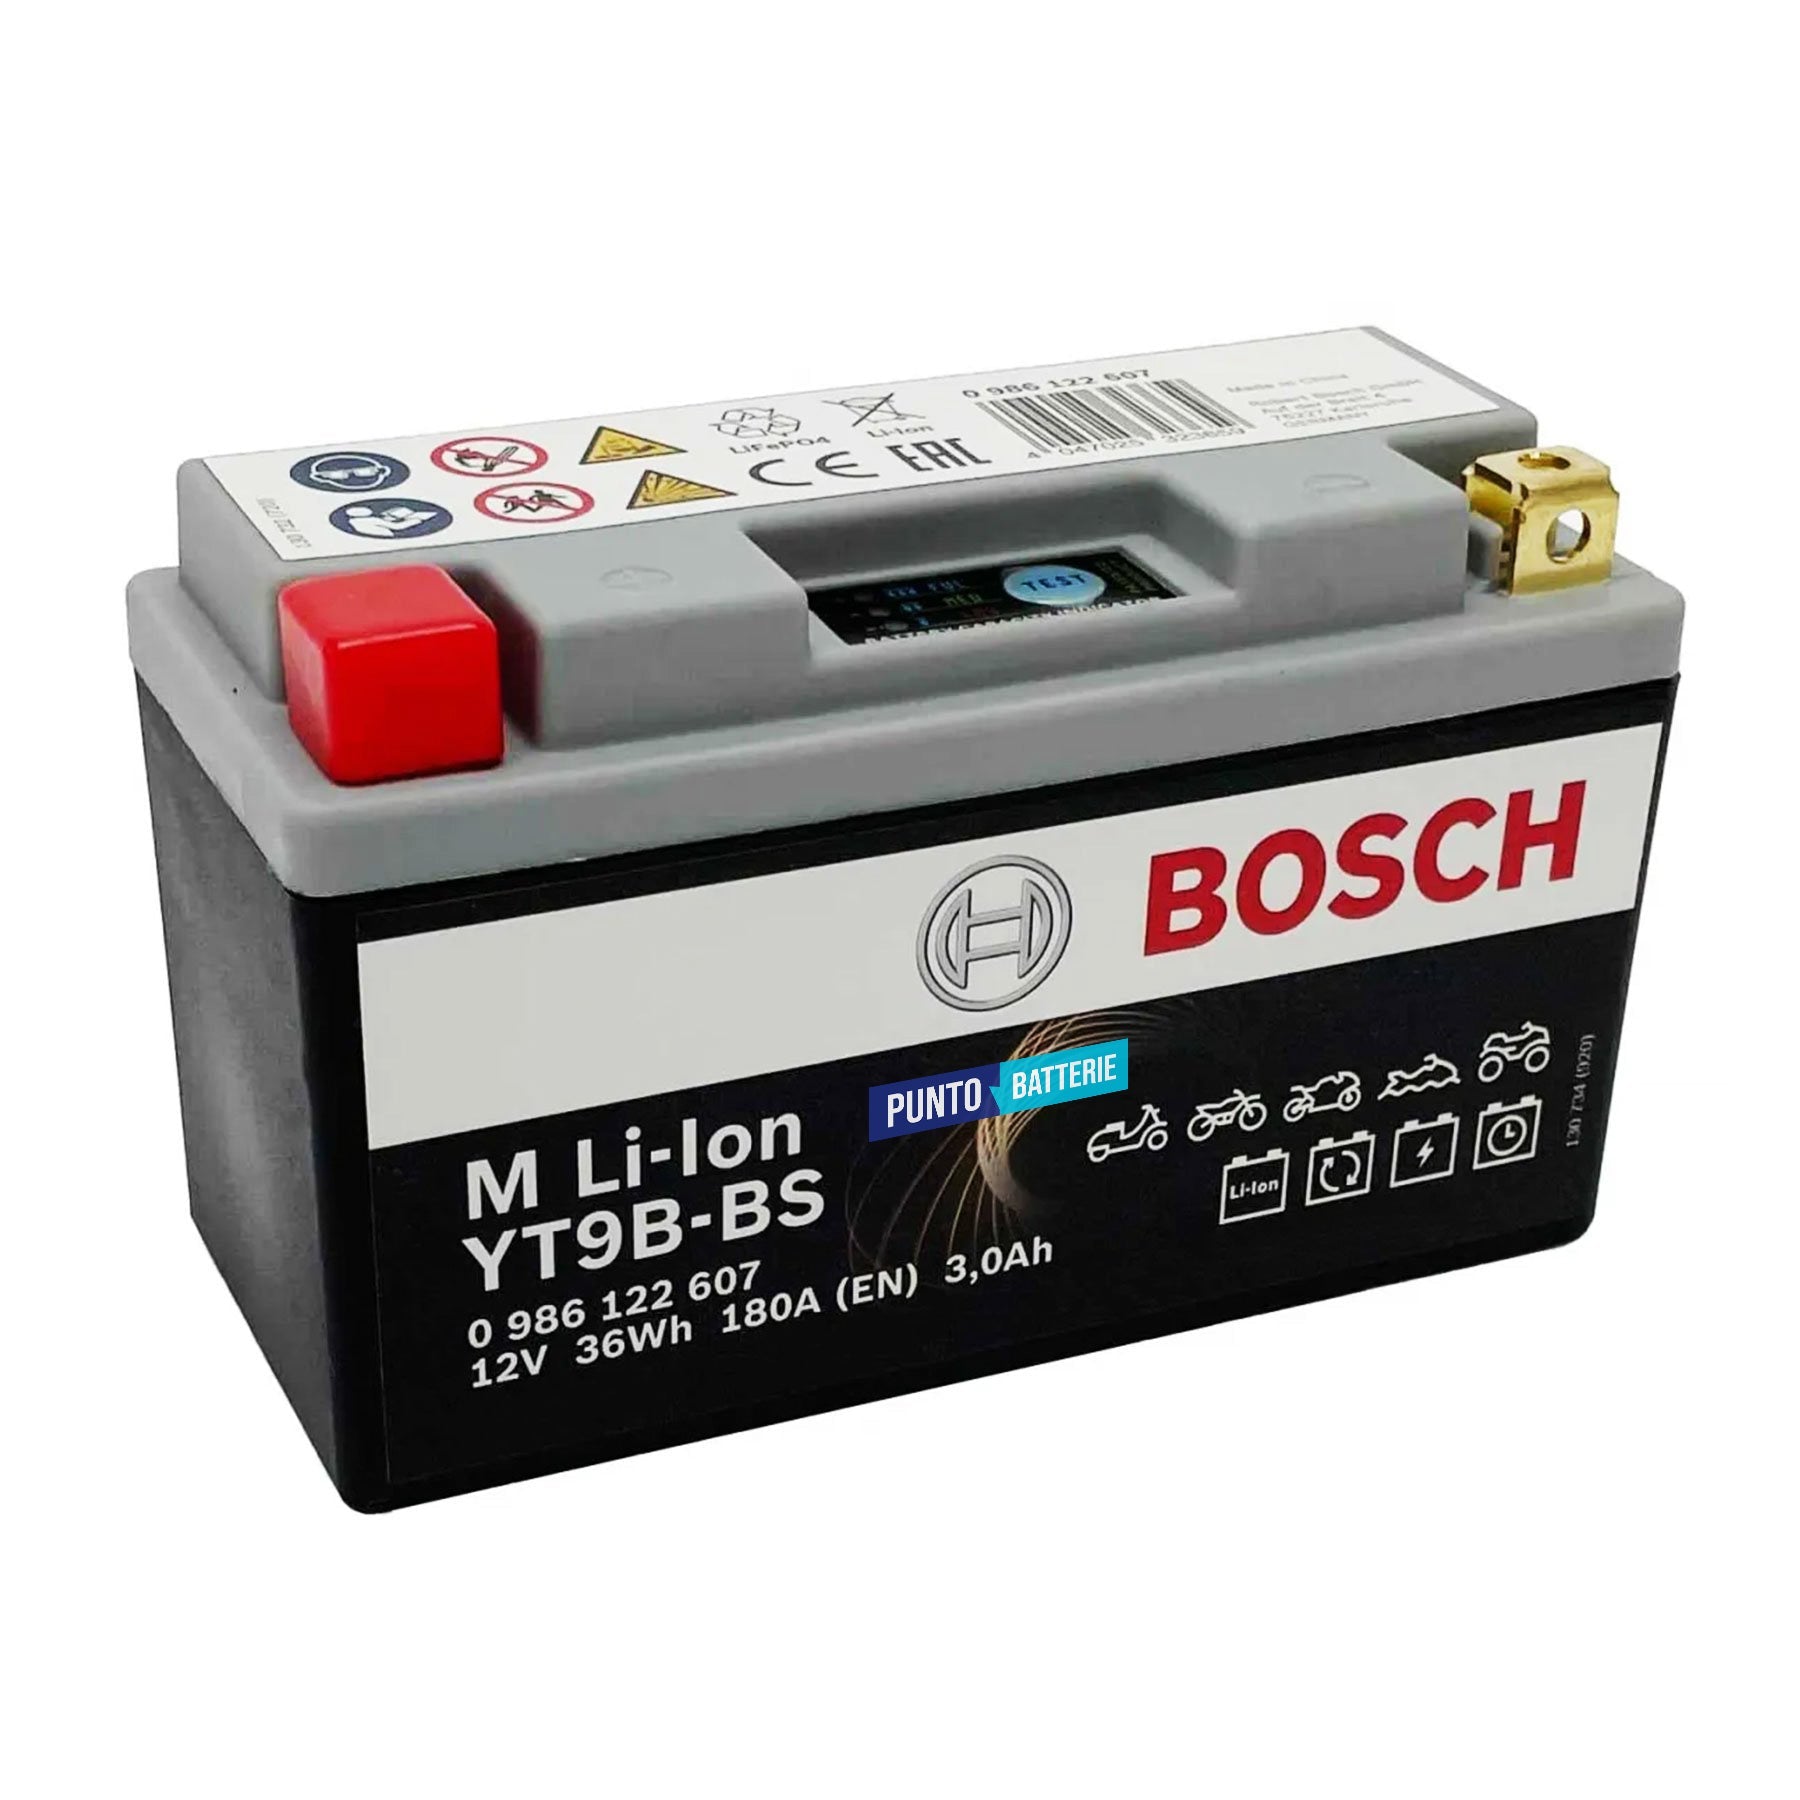 Batteria originale Bosch M Li-ion LT9B-BS, dimensioni 150 x 65 x 130, polo positivo a sinistra, 12 volt, 3 amperora, 180 ampere. Batteria per moto, scooter e powersport.